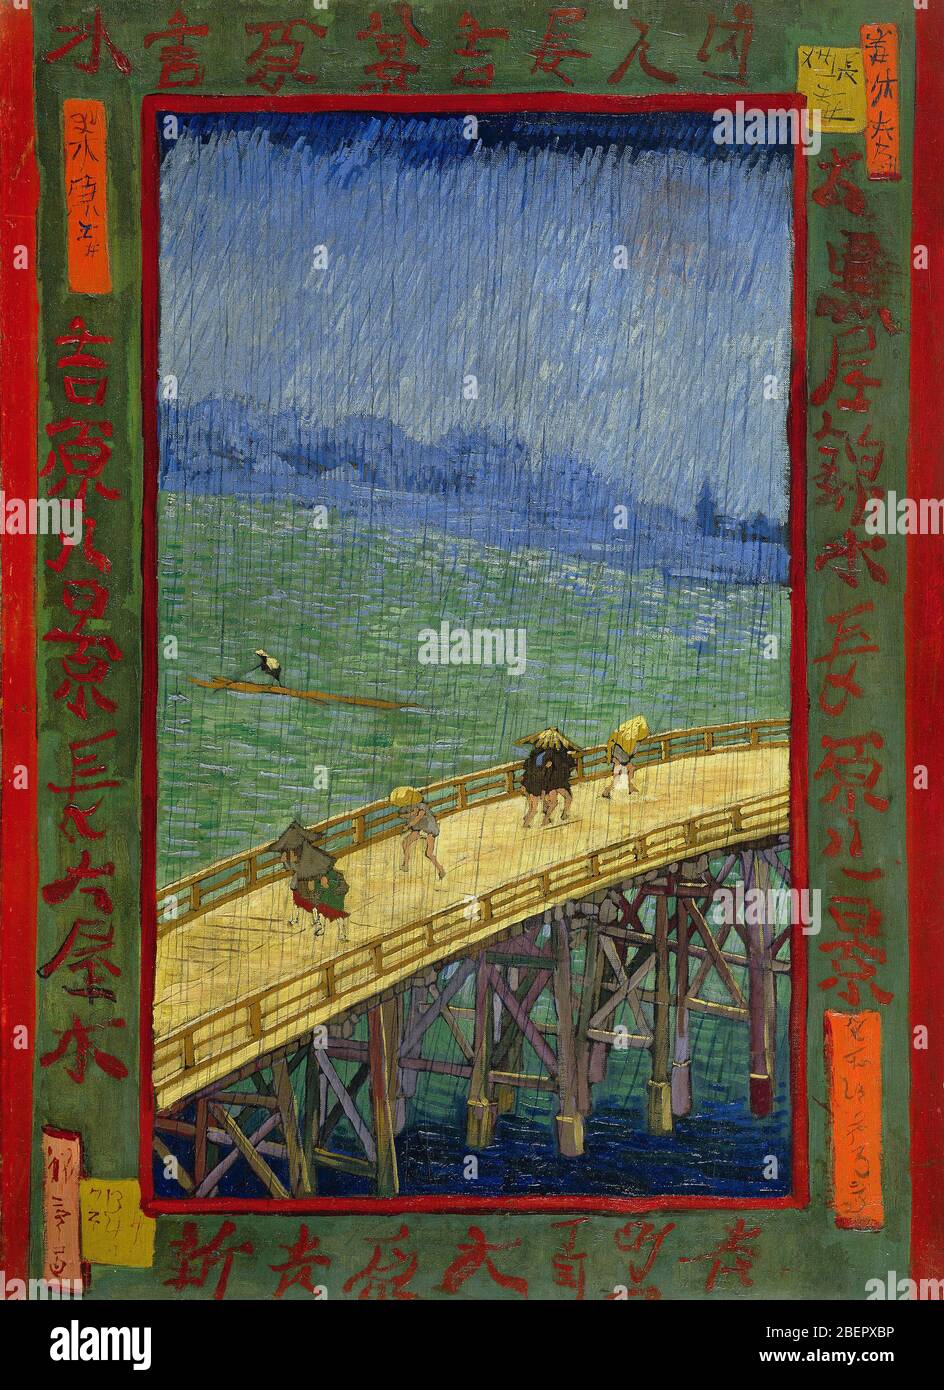 Serie japonesa (después de Utagawa Hiroshige) : el puente de lluvia por Van Gogh 1887. Museo Van Gogh, Ámsterdam Foto de stock